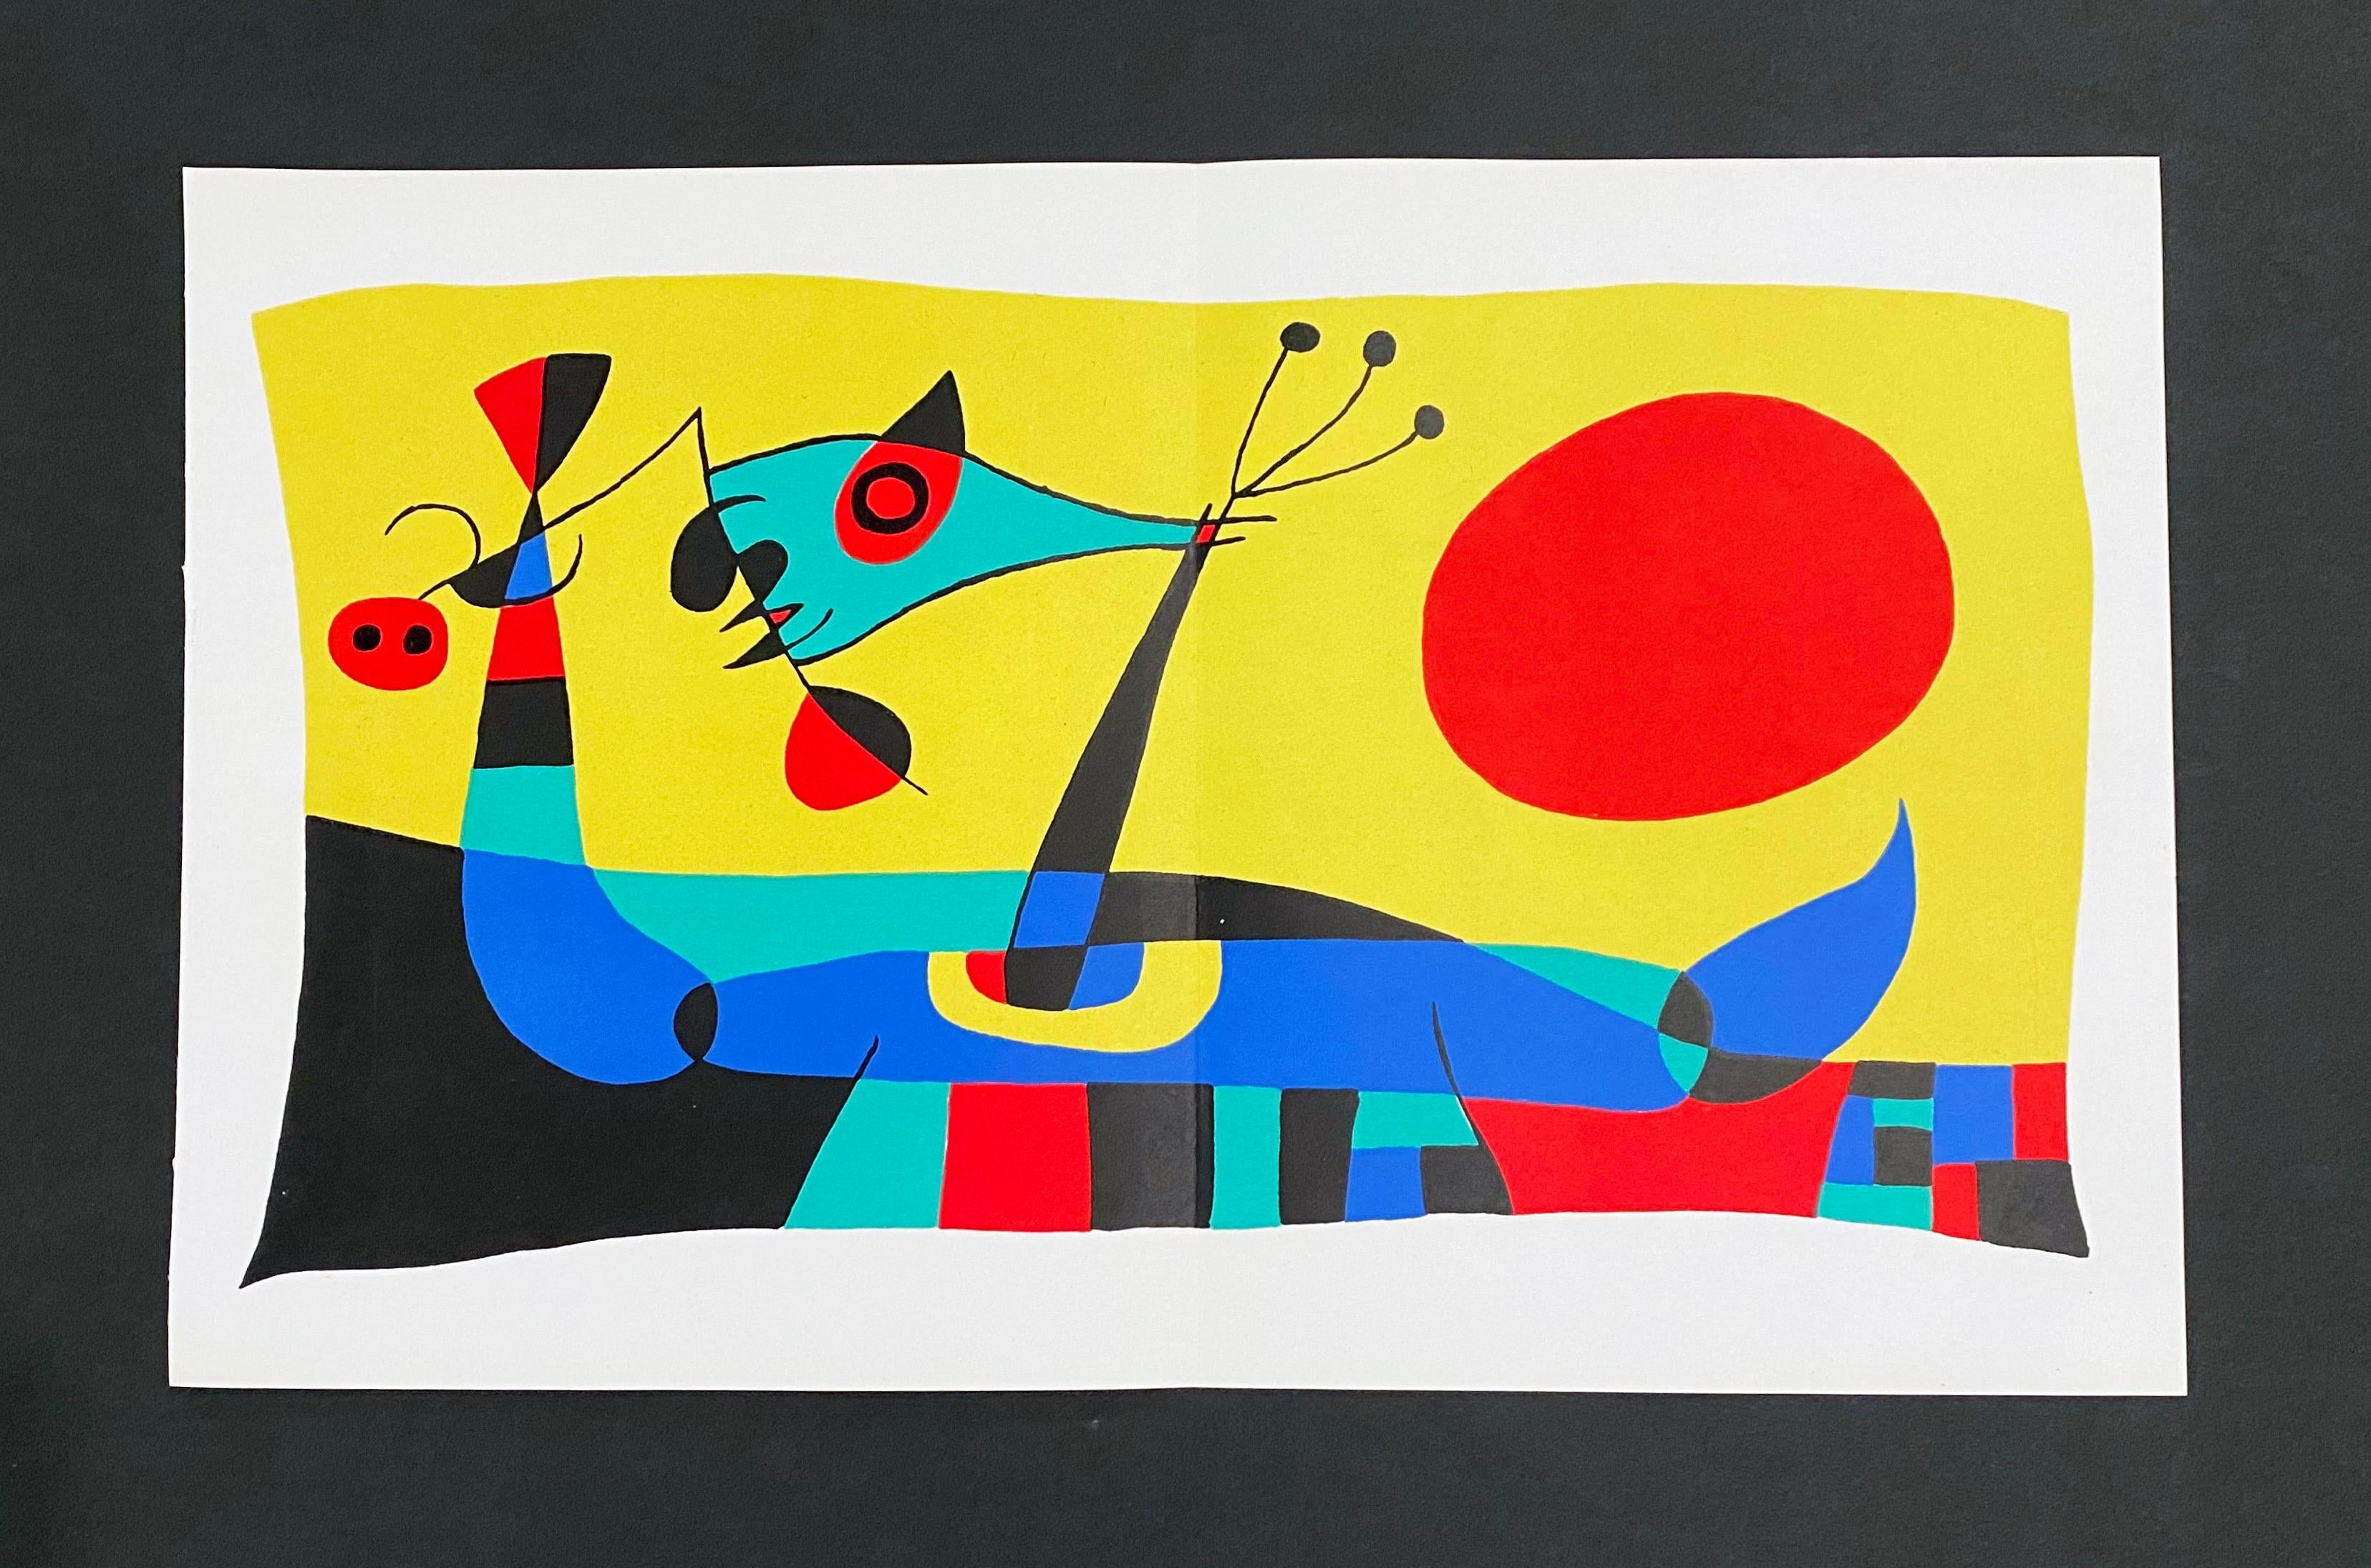 Artiste : Joan Miro
Titre : Planche 2
Portefeuille : Joan Miro
Médium : Lithographie
Date : 1956
Édition : Non numéroté
Taille du cadre : 17